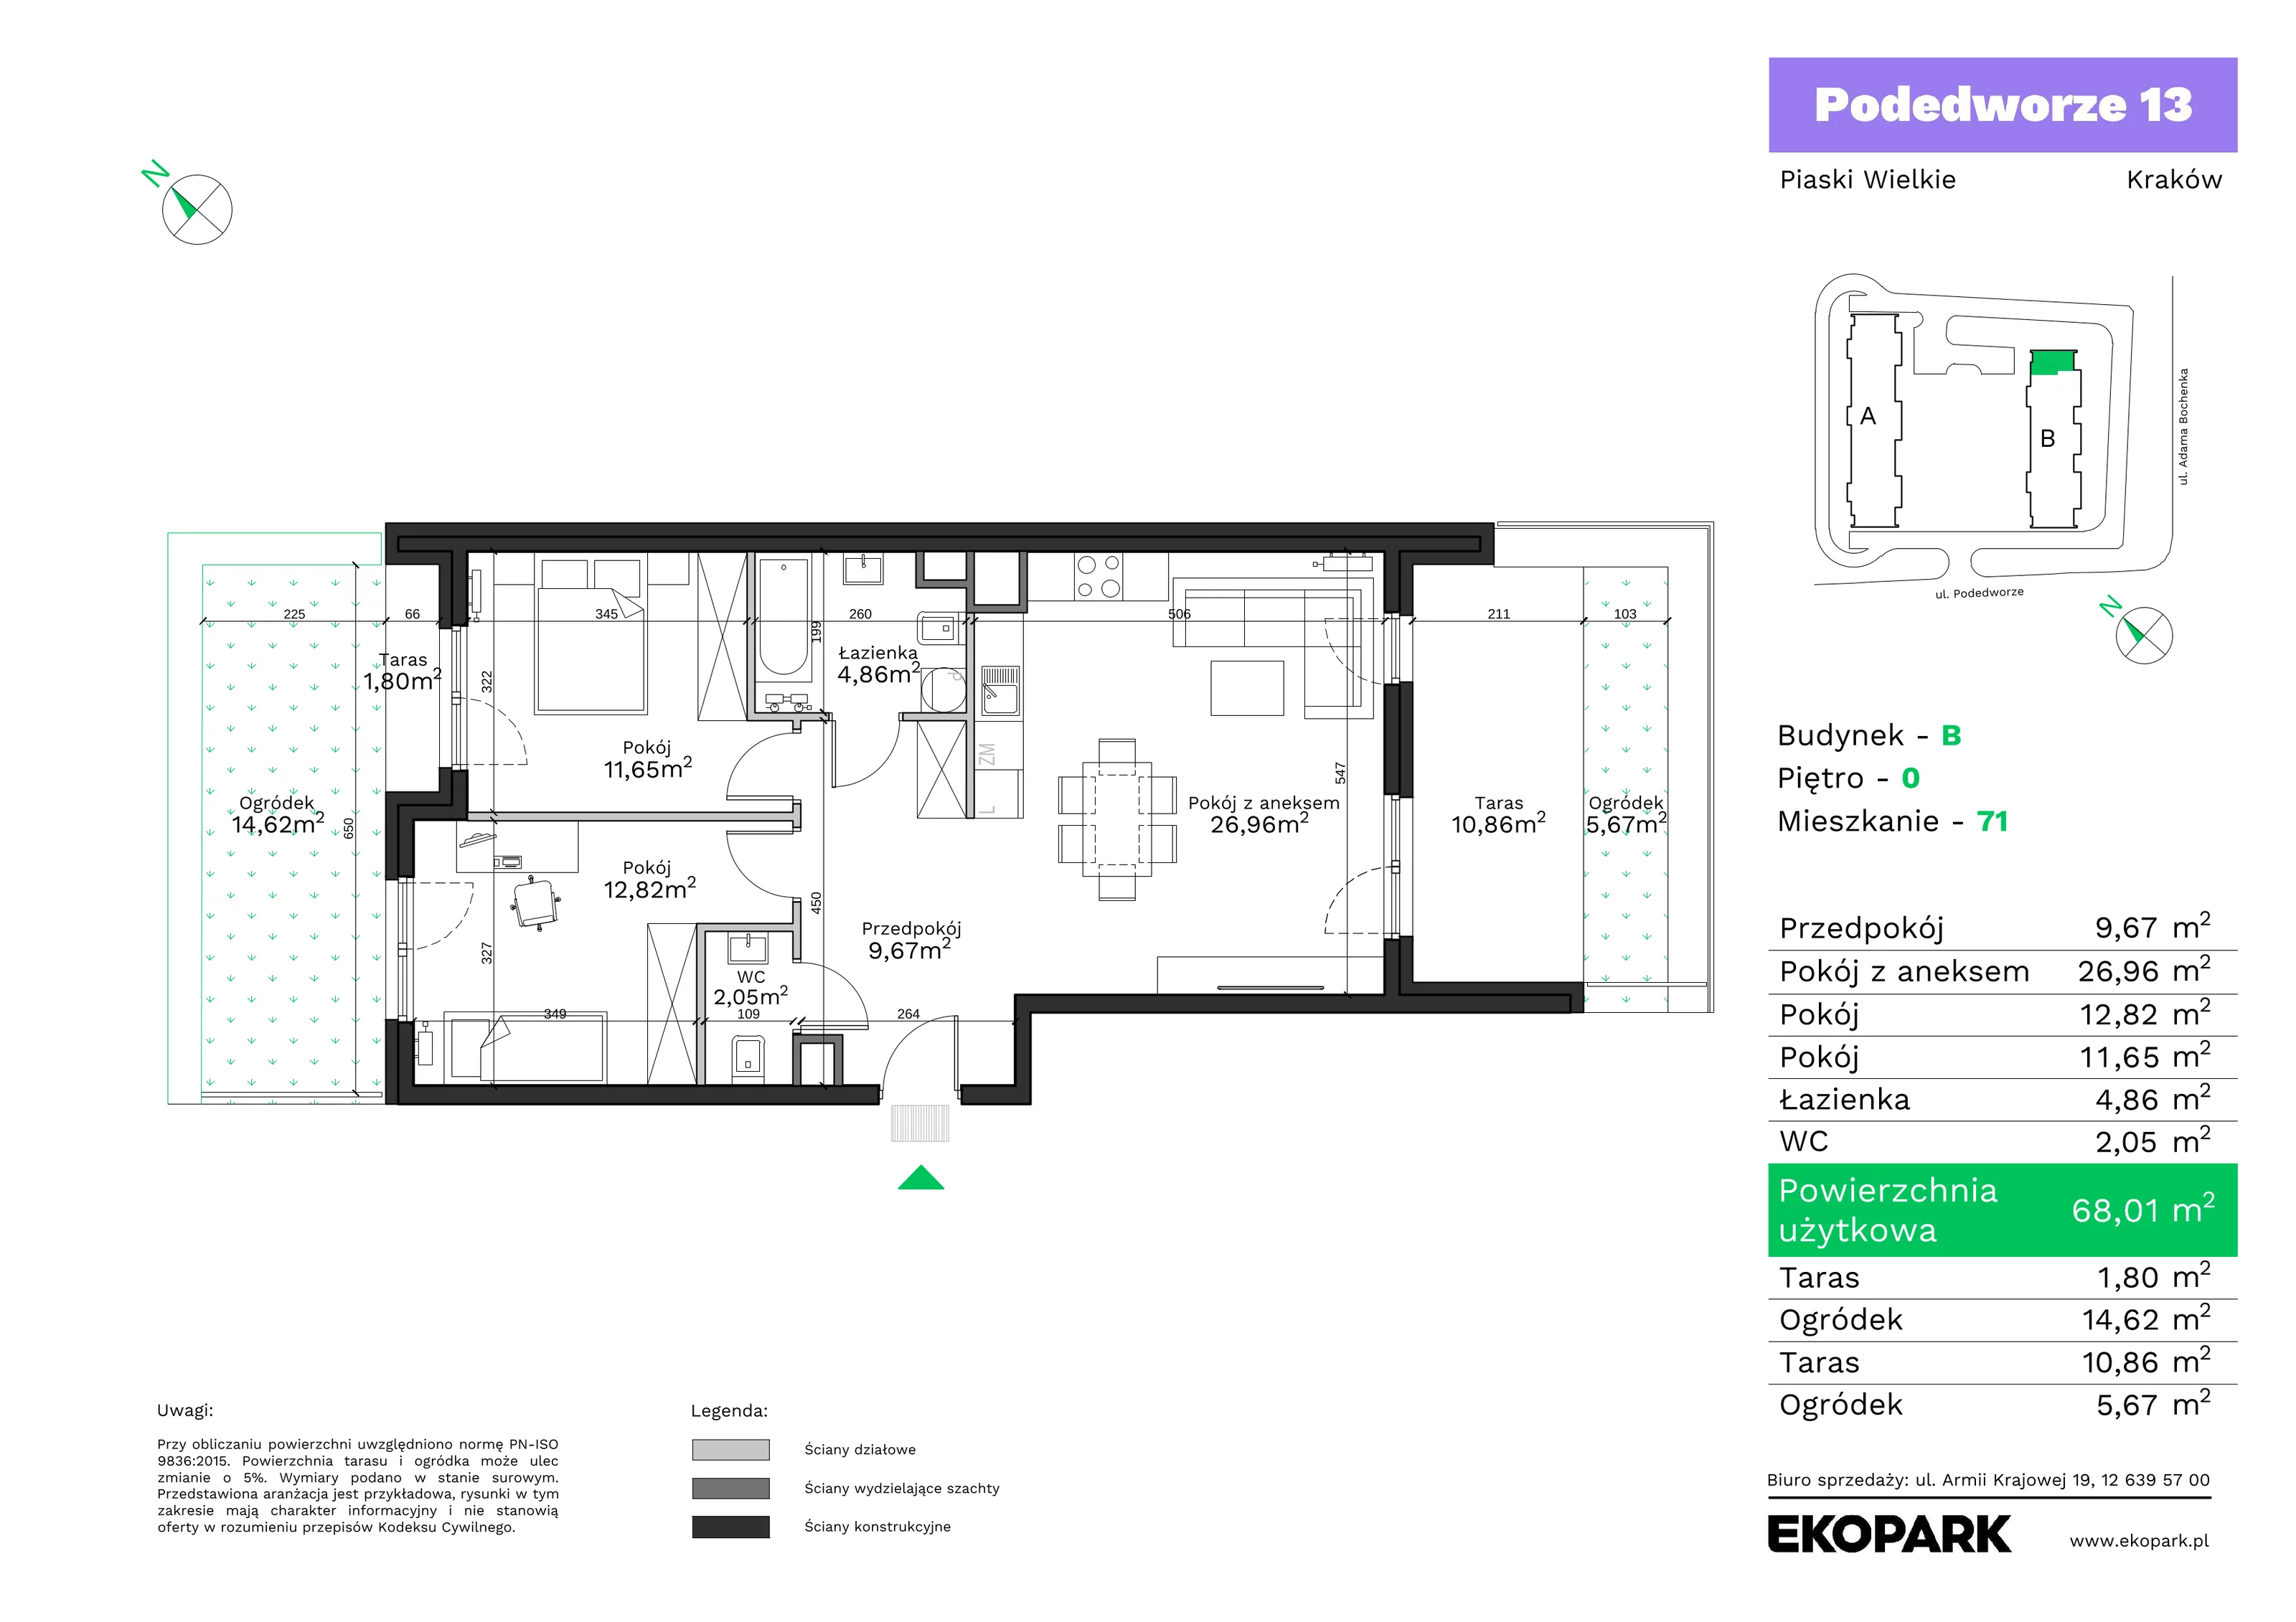 Mieszkanie 68,01 m², parter, oferta nr B71, Podedworze 13, Kraków, Podgórze Duchackie, Piaski Wielkie, ul. Podedworze 13